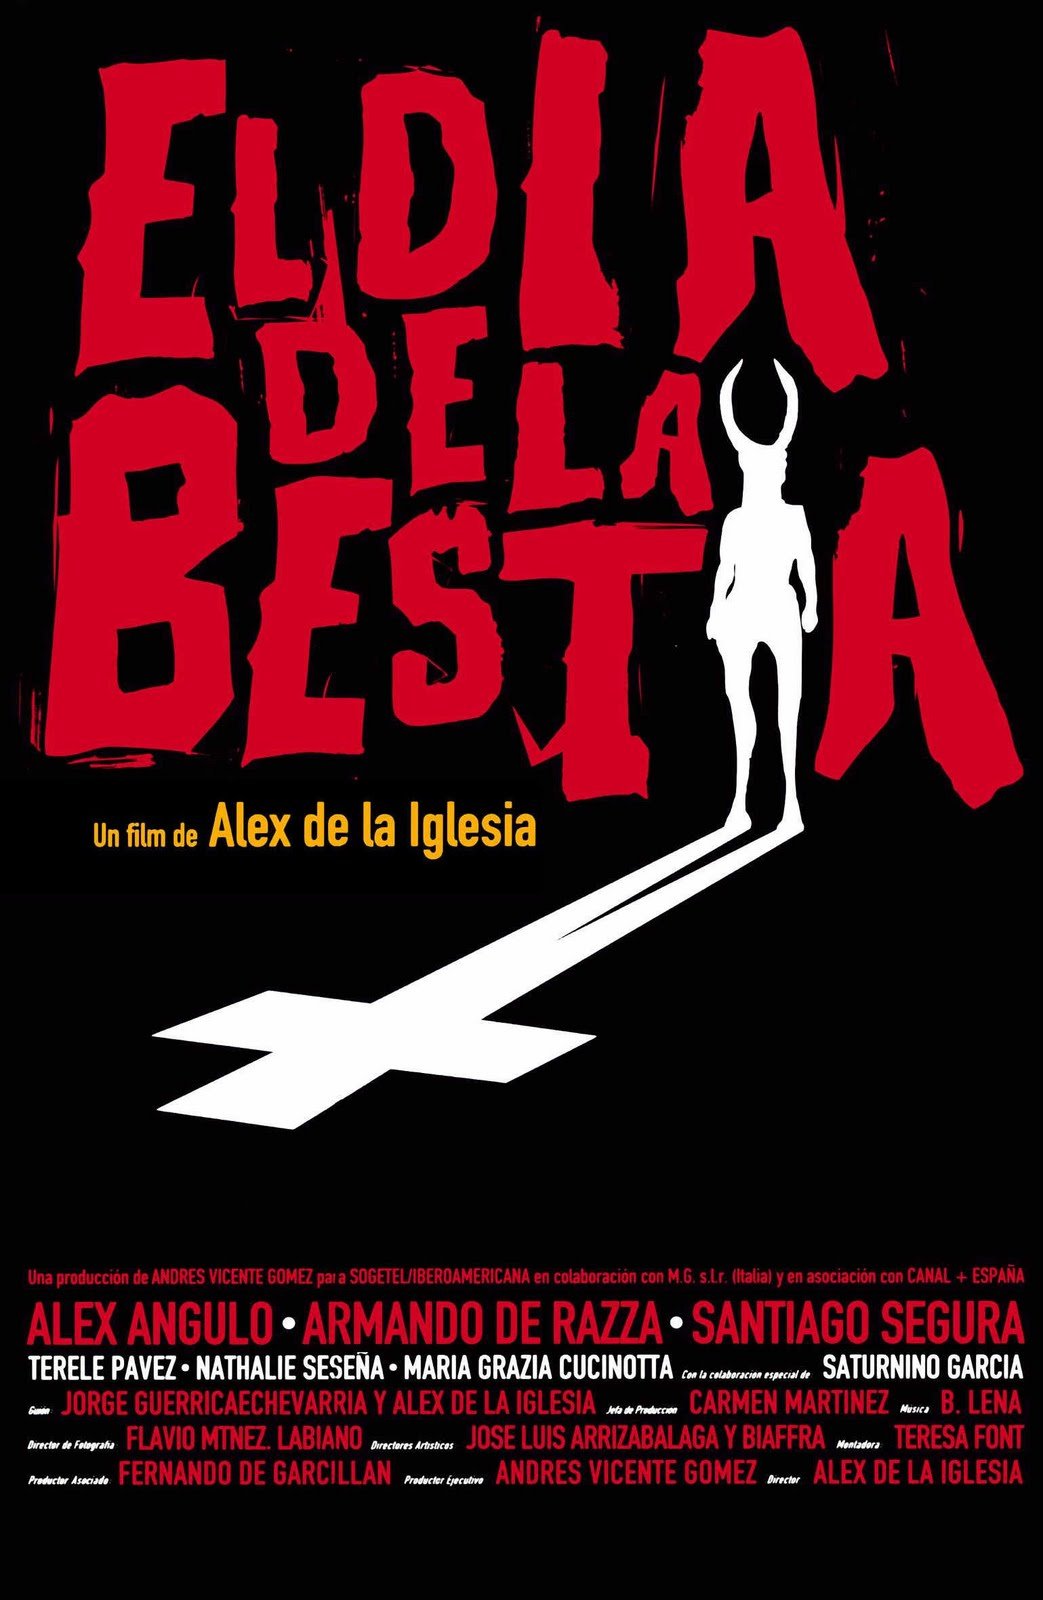 Poster of the movie El día de la bestia